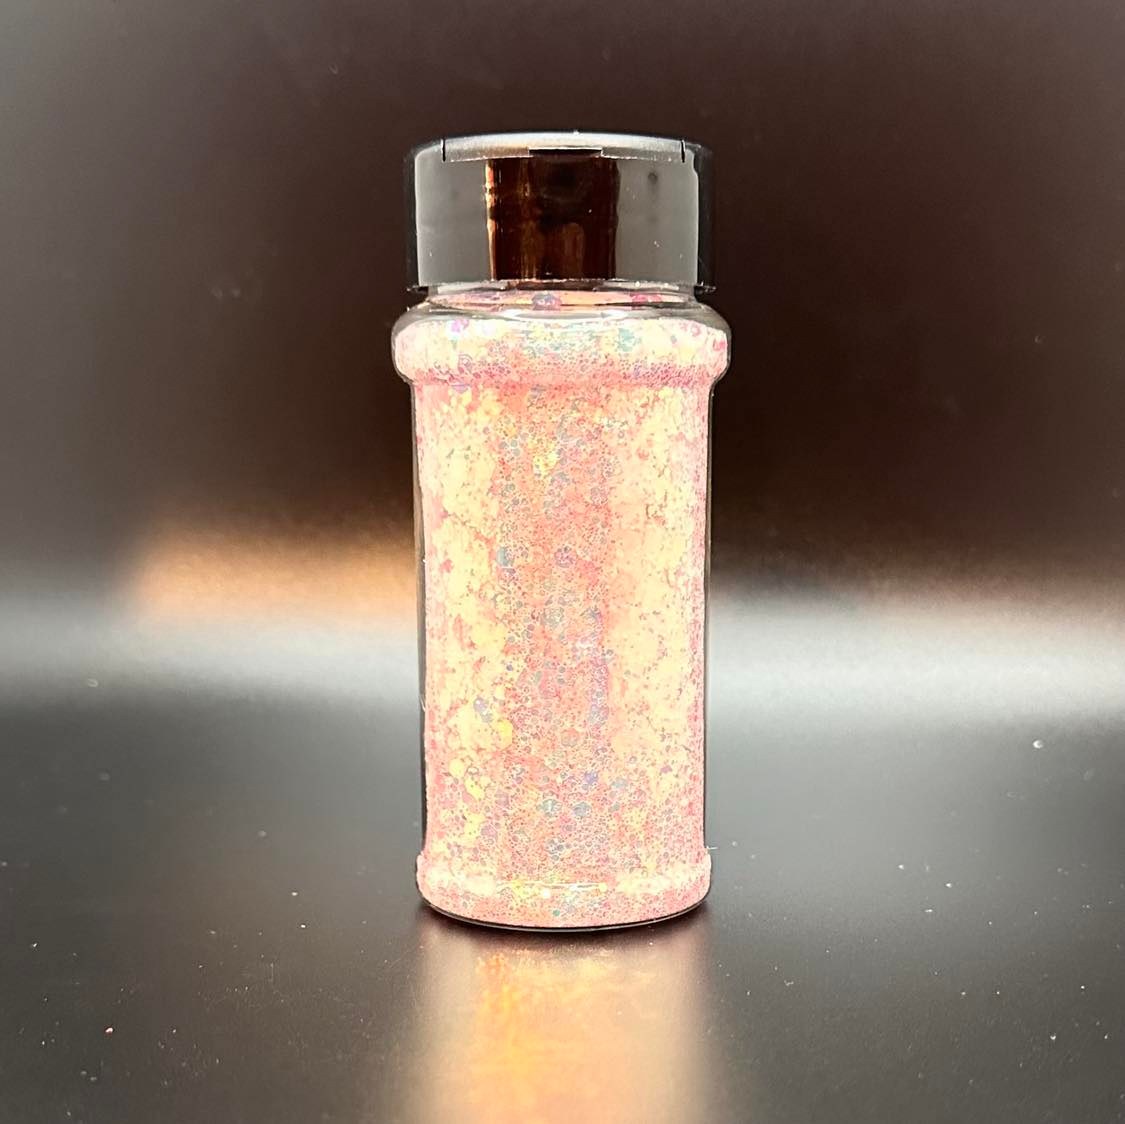 Sparkles Chunky Mix Opal Glitter